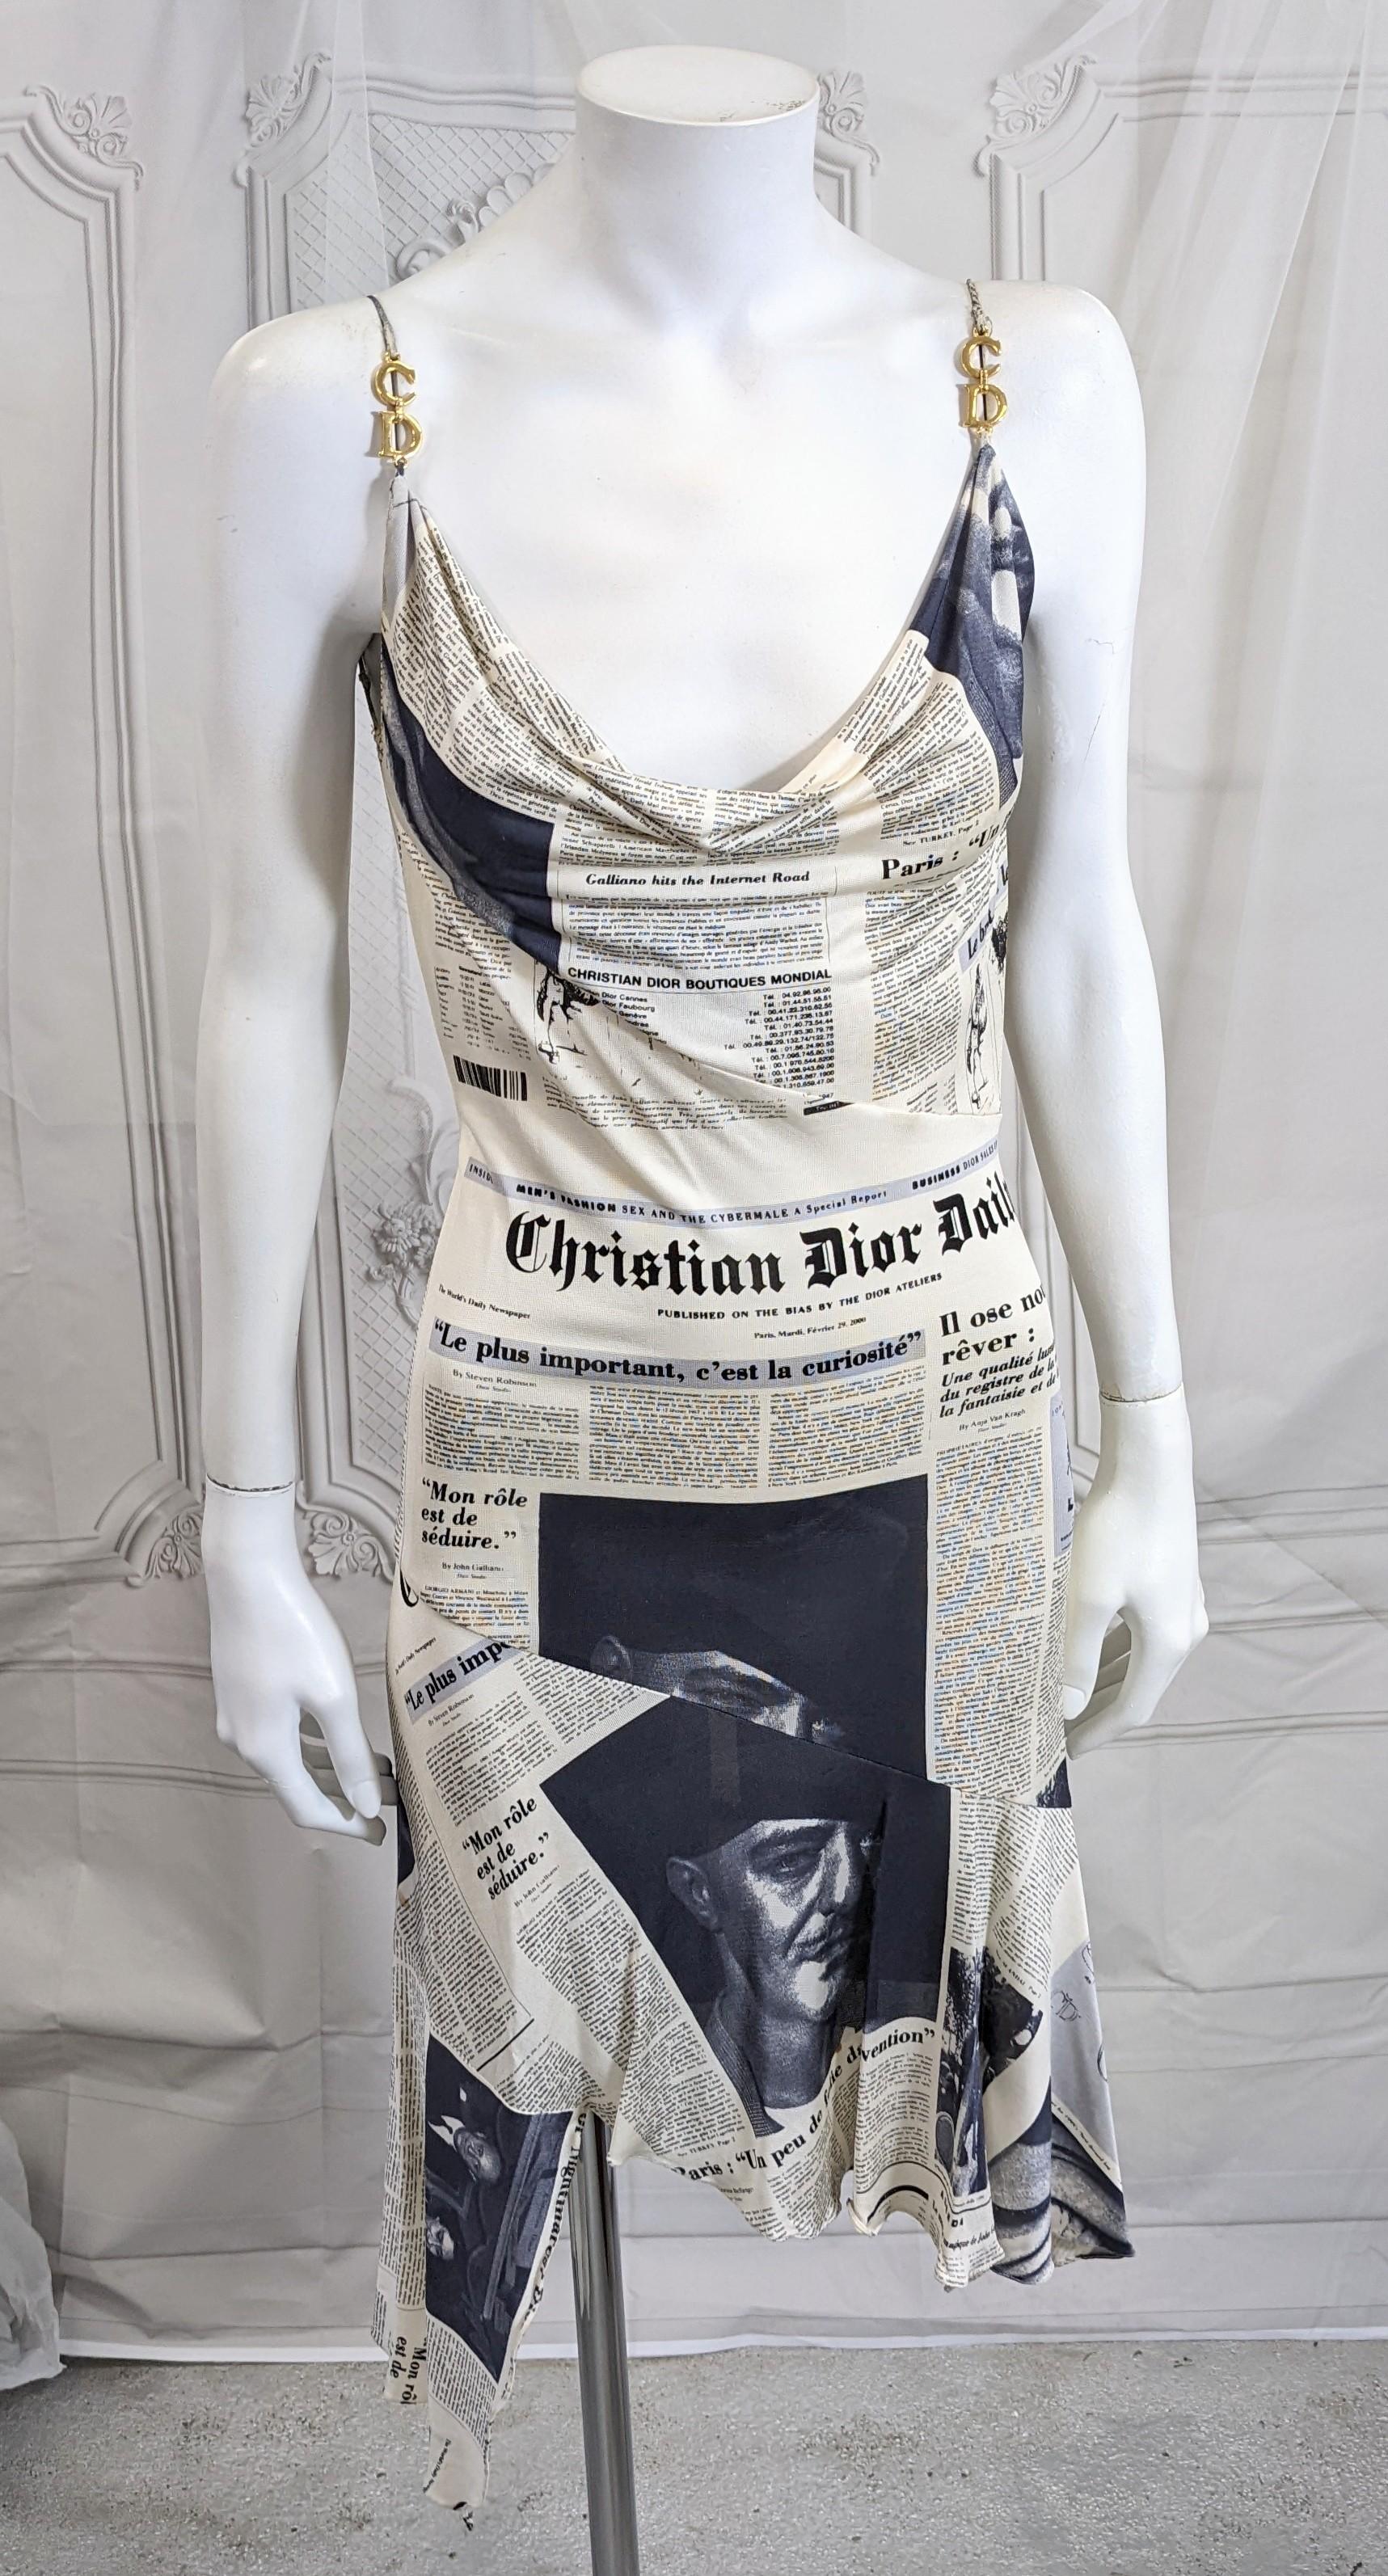 Angeboten wird die kultige John Galliano für Christian Dior Herbst/Winter 2000-2001  Newsprint-Kleid, getragen von Sarah Jessica Parker und ausgeliehen von Vintage Luxury N.Y. für den Film Sex and the City 2.
Das kultige Zeitungspapierkleid von Dior